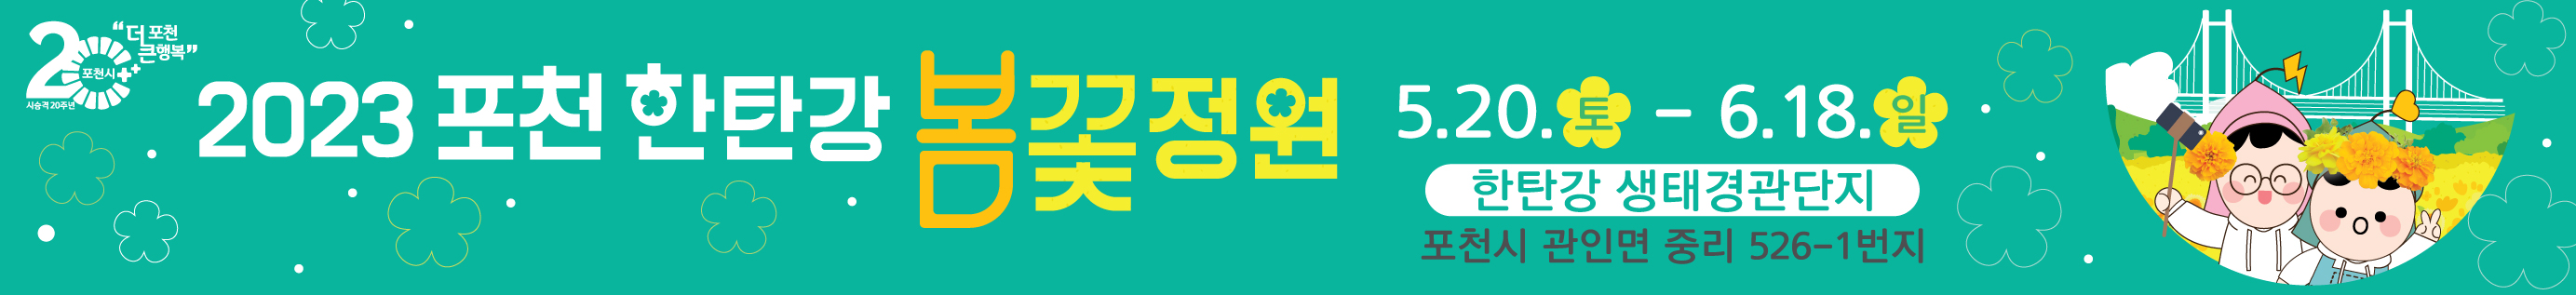 2023. 포천 한탄강 봄꽃정원 5.20(토)~6.18(일) 